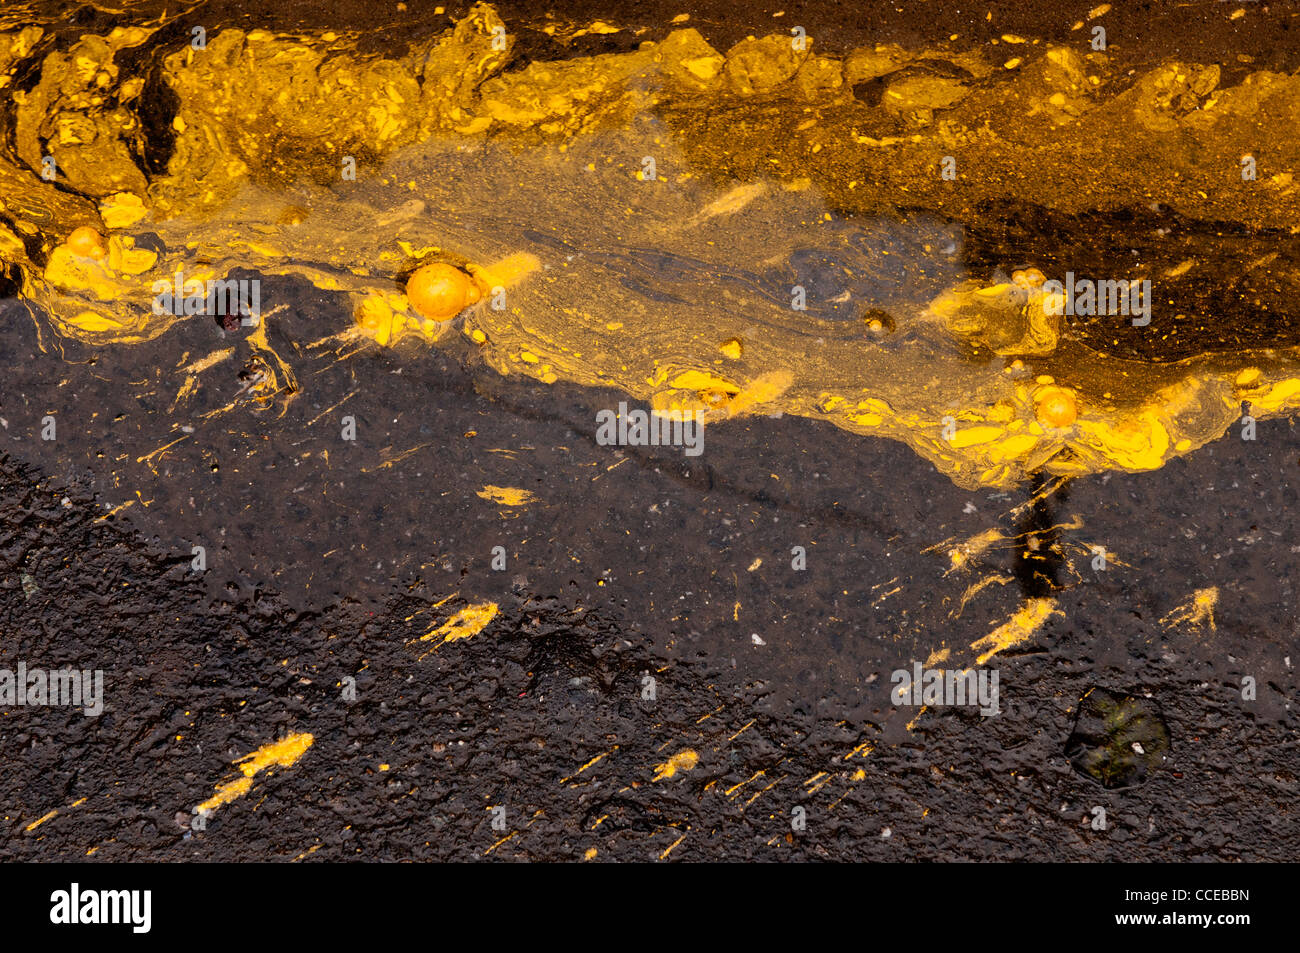 Yellow ochre paint spill on a wet road, Hoi An, Vietnam Stock Photo